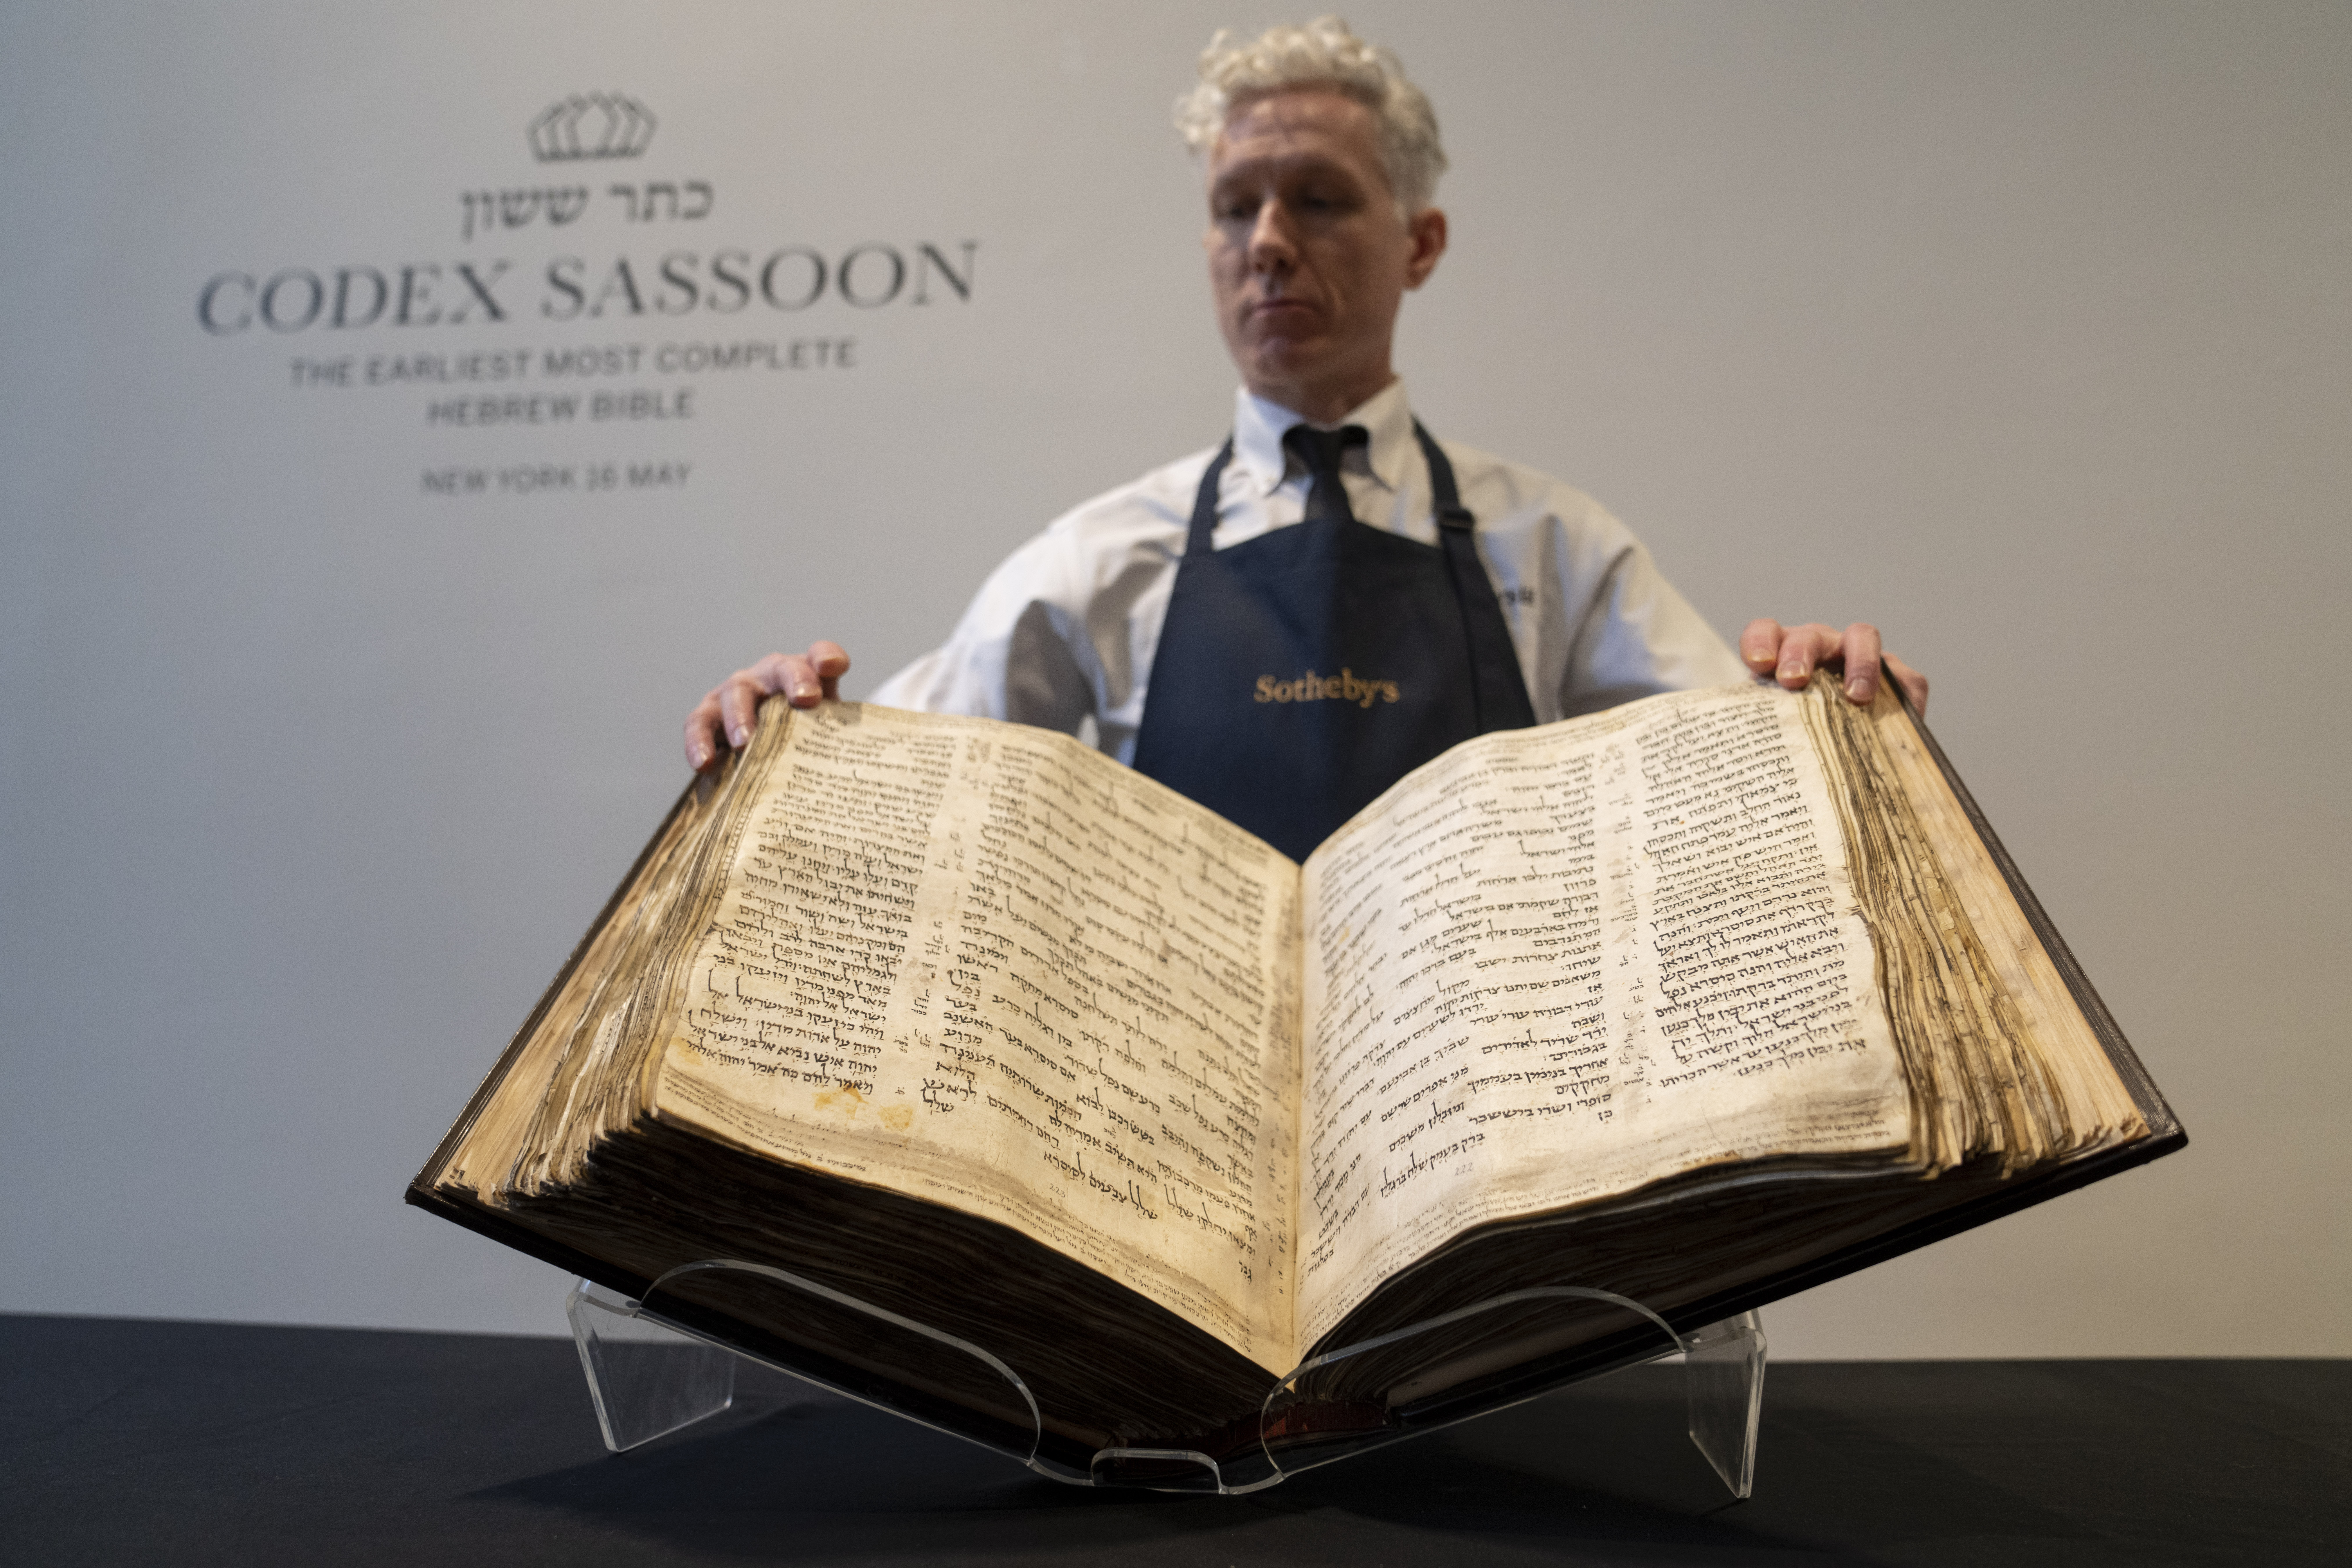 Worlds oldest Hebrew Bible